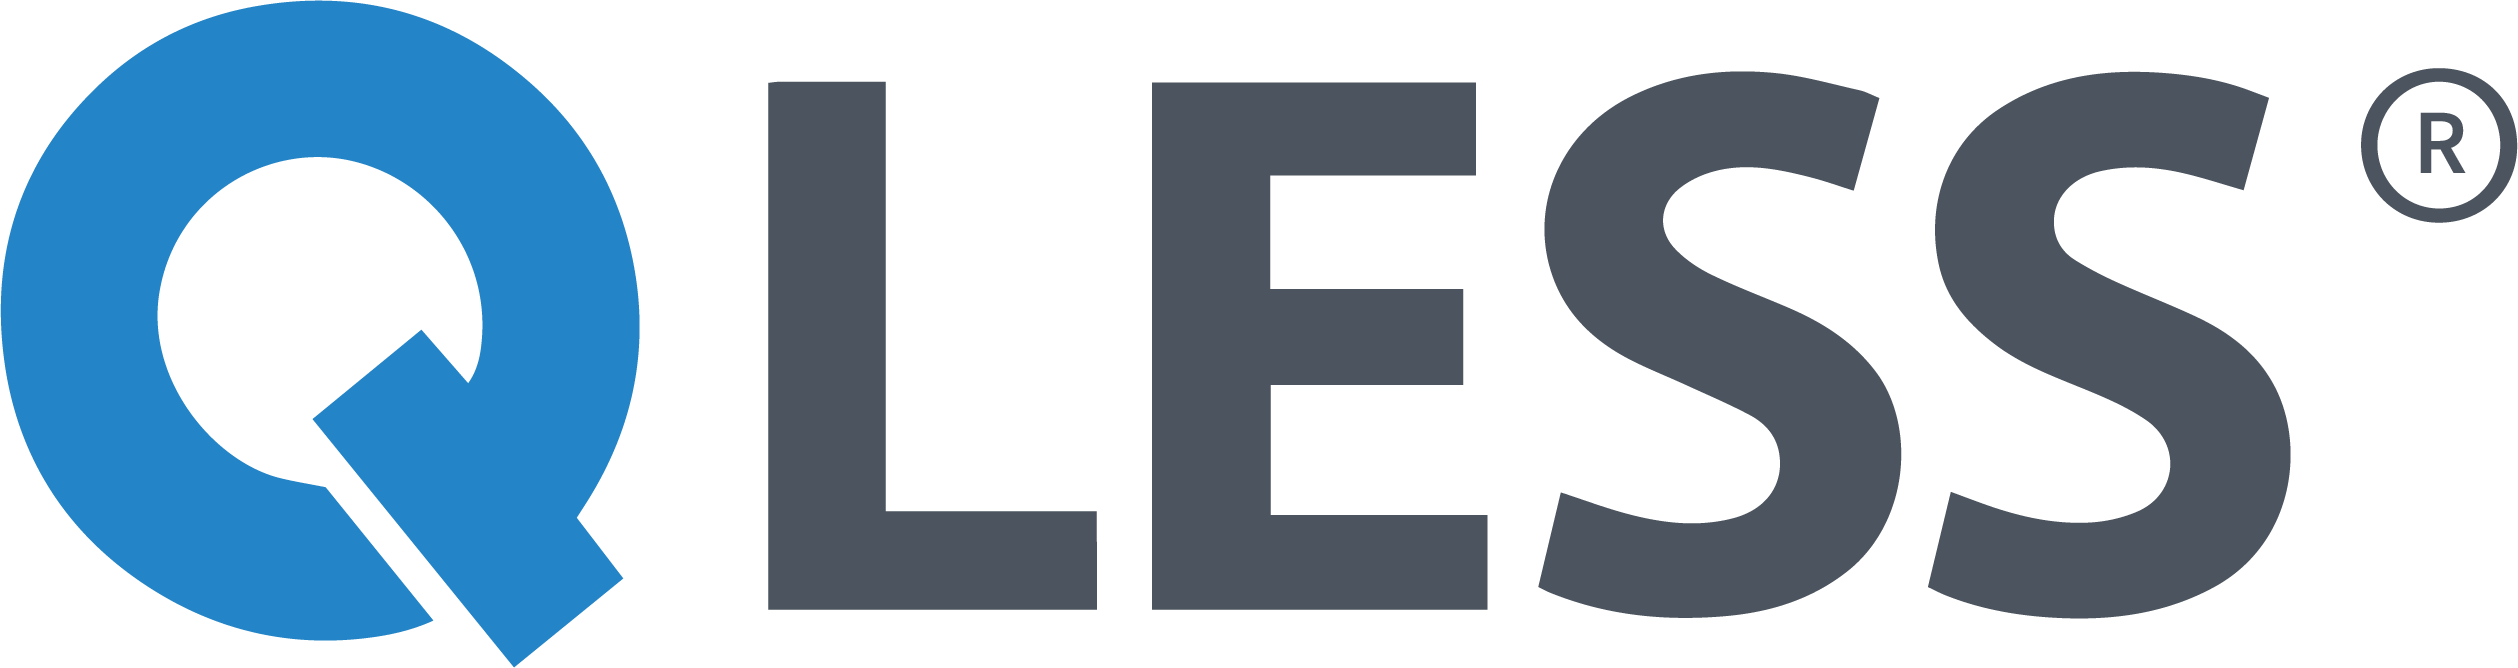 Qless Logo